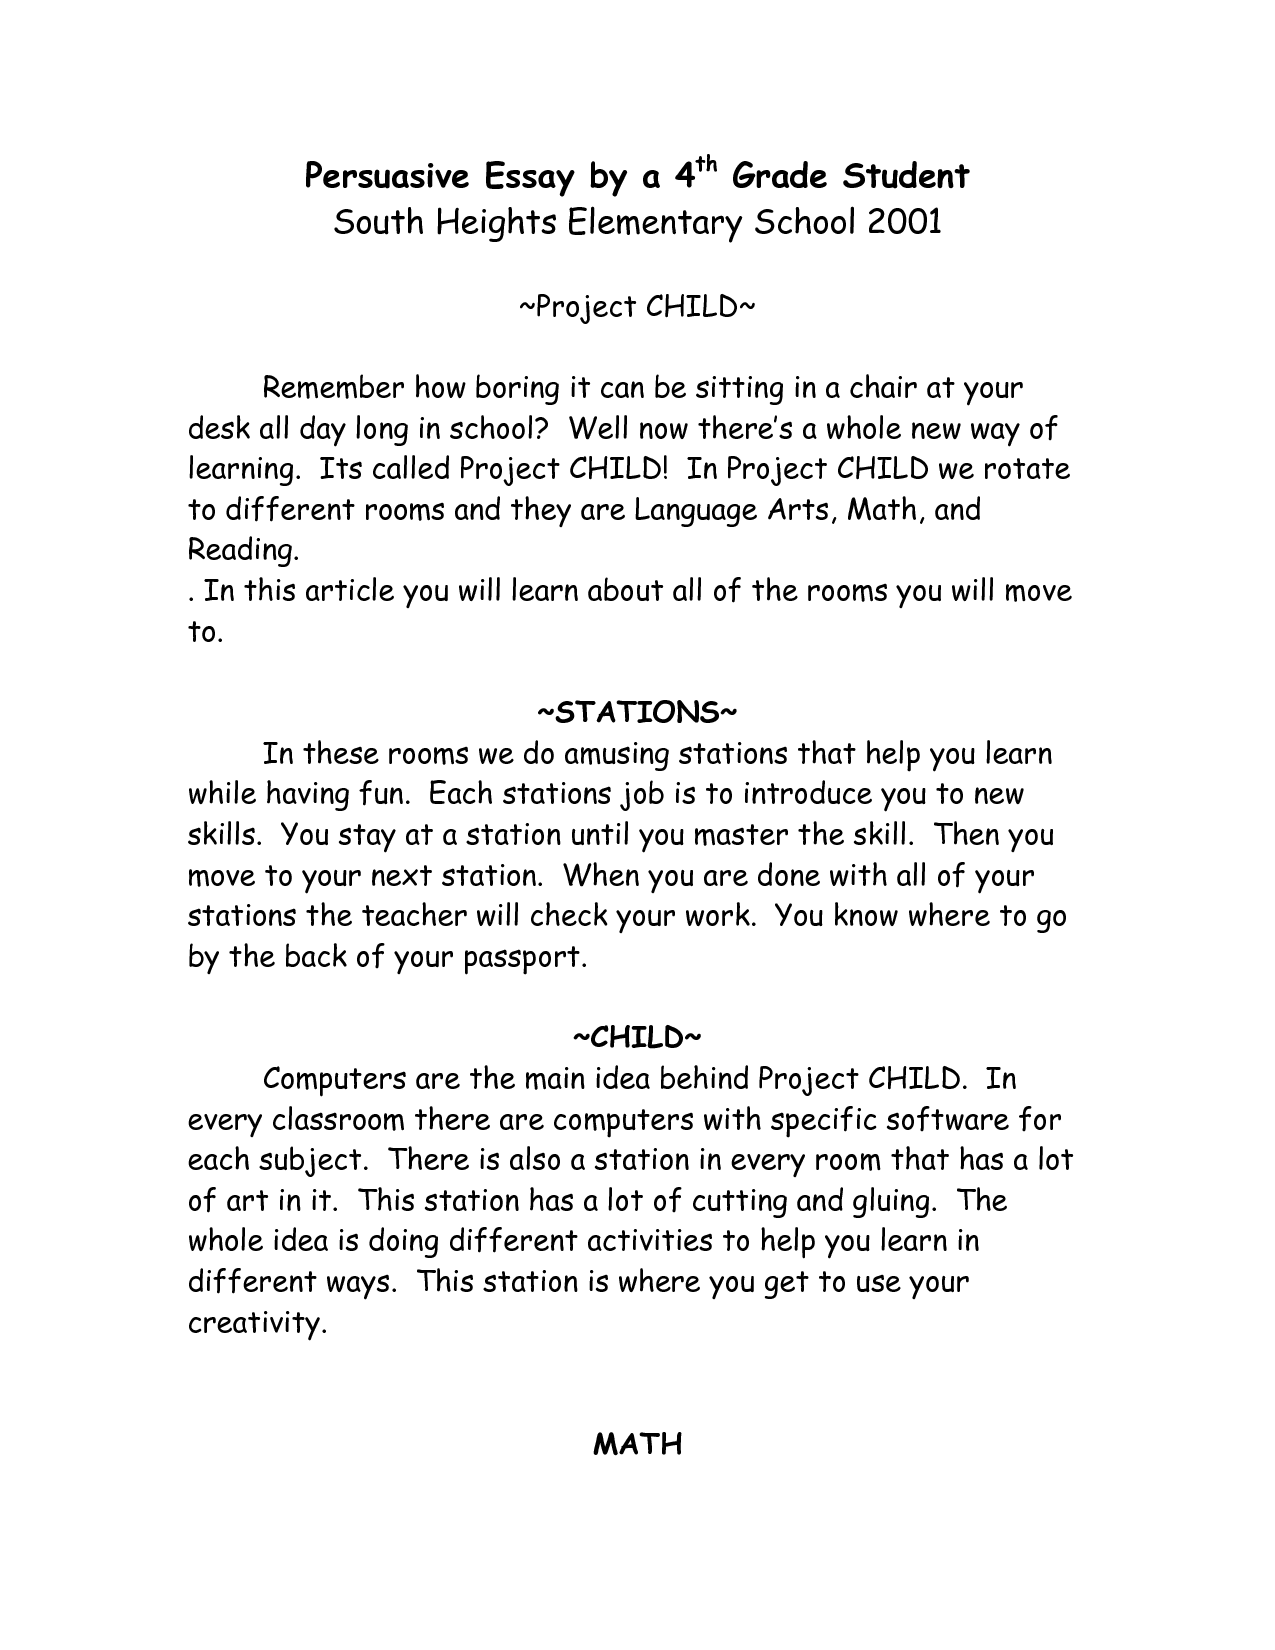 4th grade narrative essay example